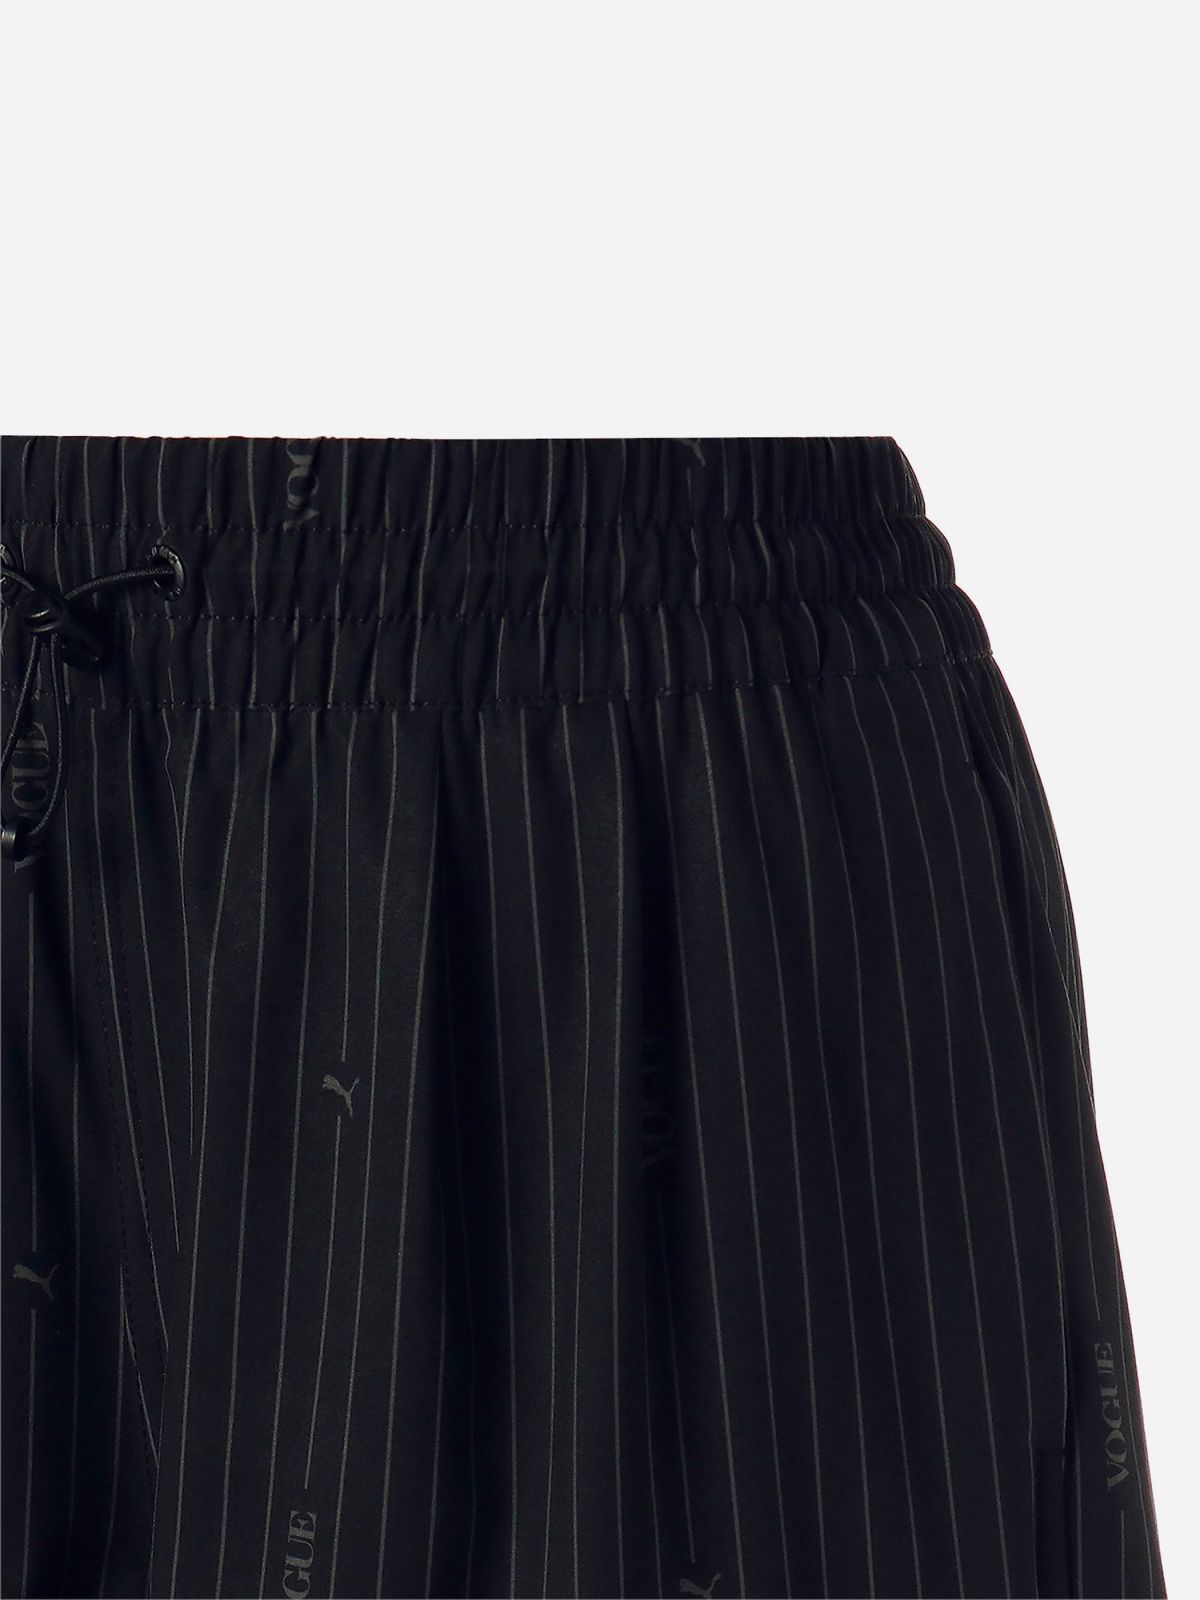  מכנסיים קצרים בהדפס פסים PUMA x VOGUE / נשים של PUMA